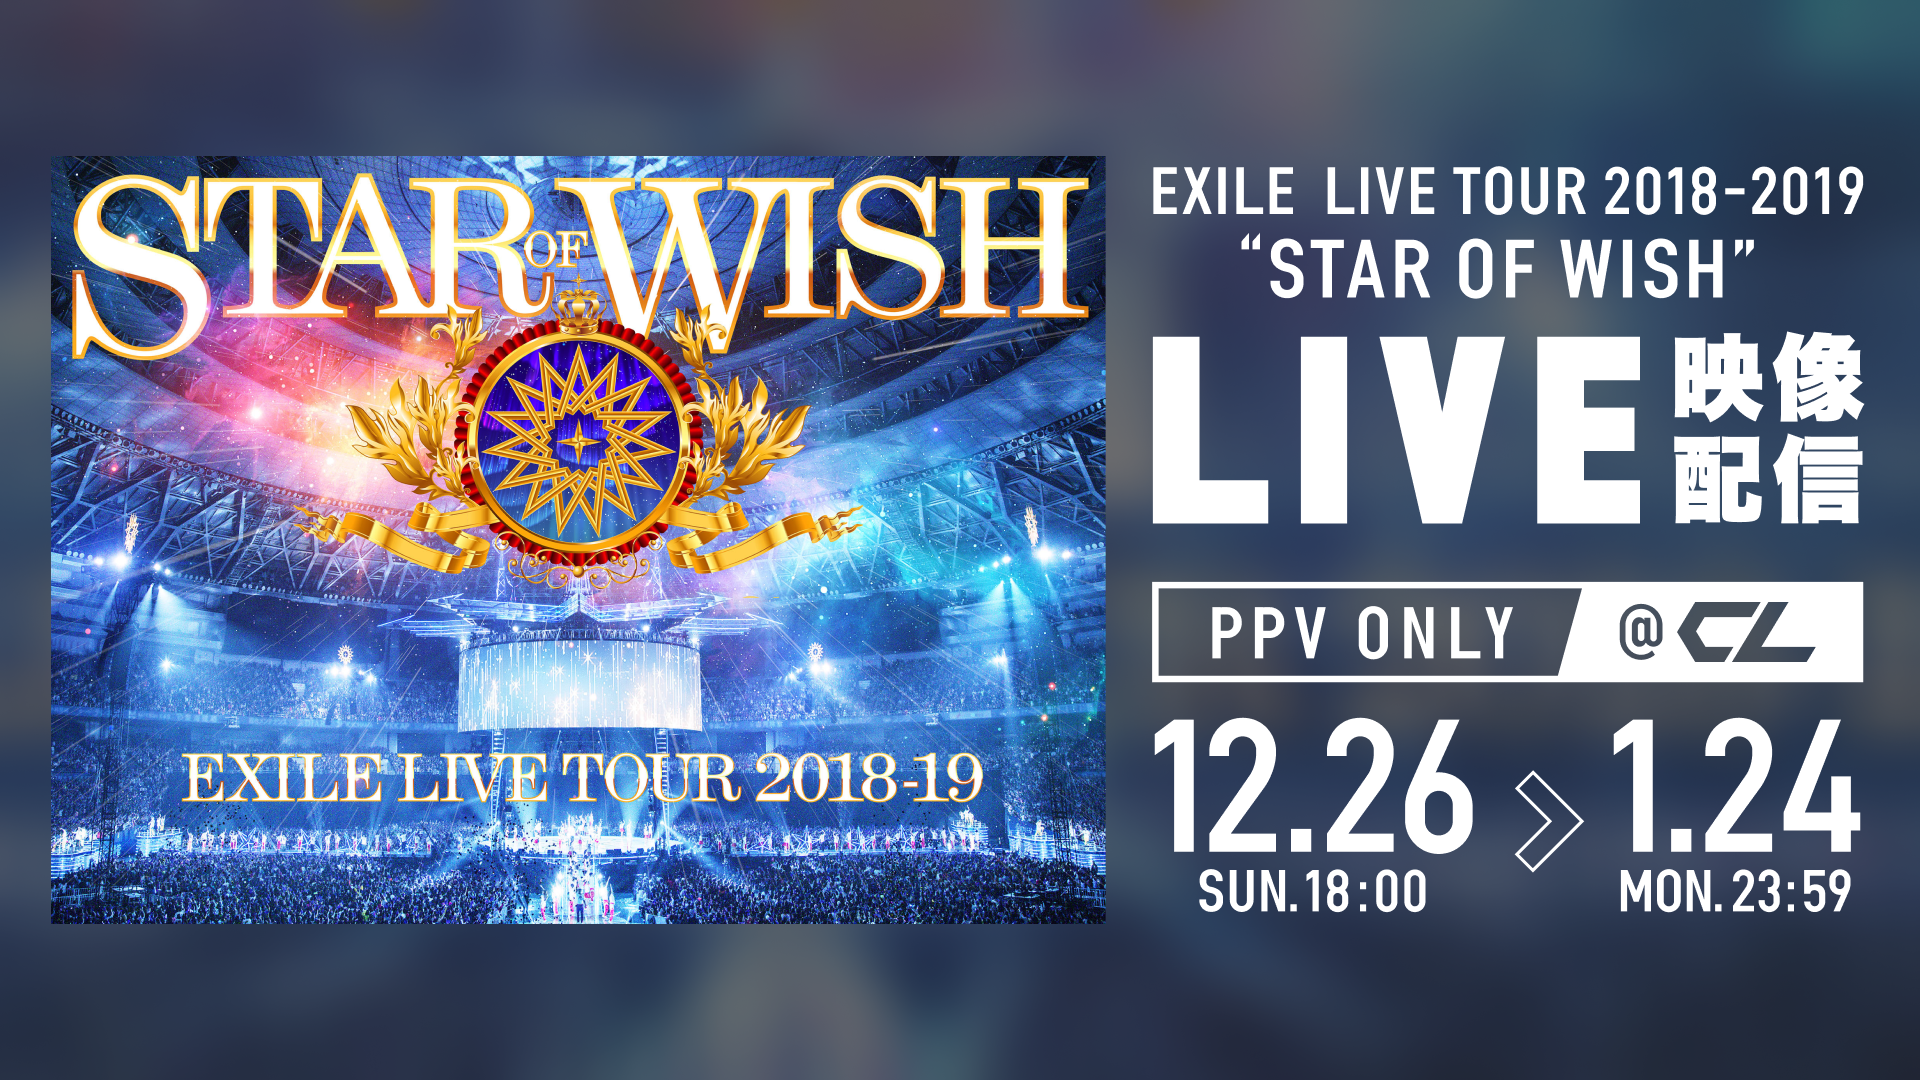 【期間限定PPV配信】EXILE LIVE TOUR 2018-2019 